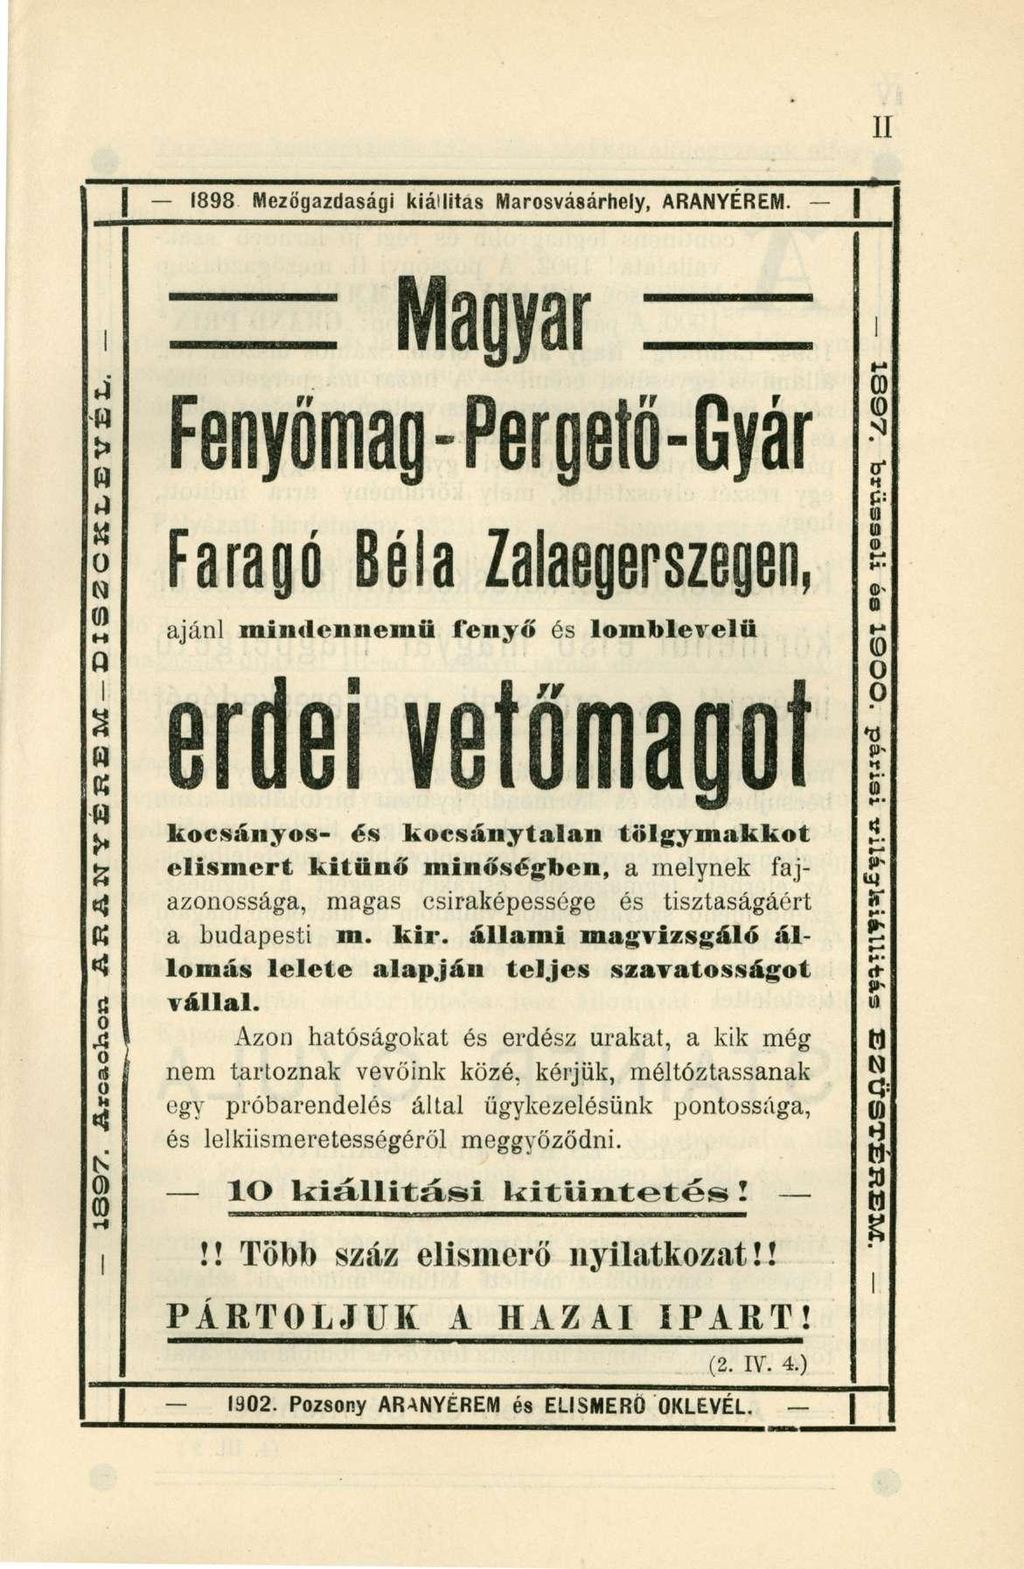 1898 Mezőgazdasági kiállítás Marosvásárhely, ARANYÉREM. Magyar > 14 0 N (I) M Q I % (4 K W í» *U K «!